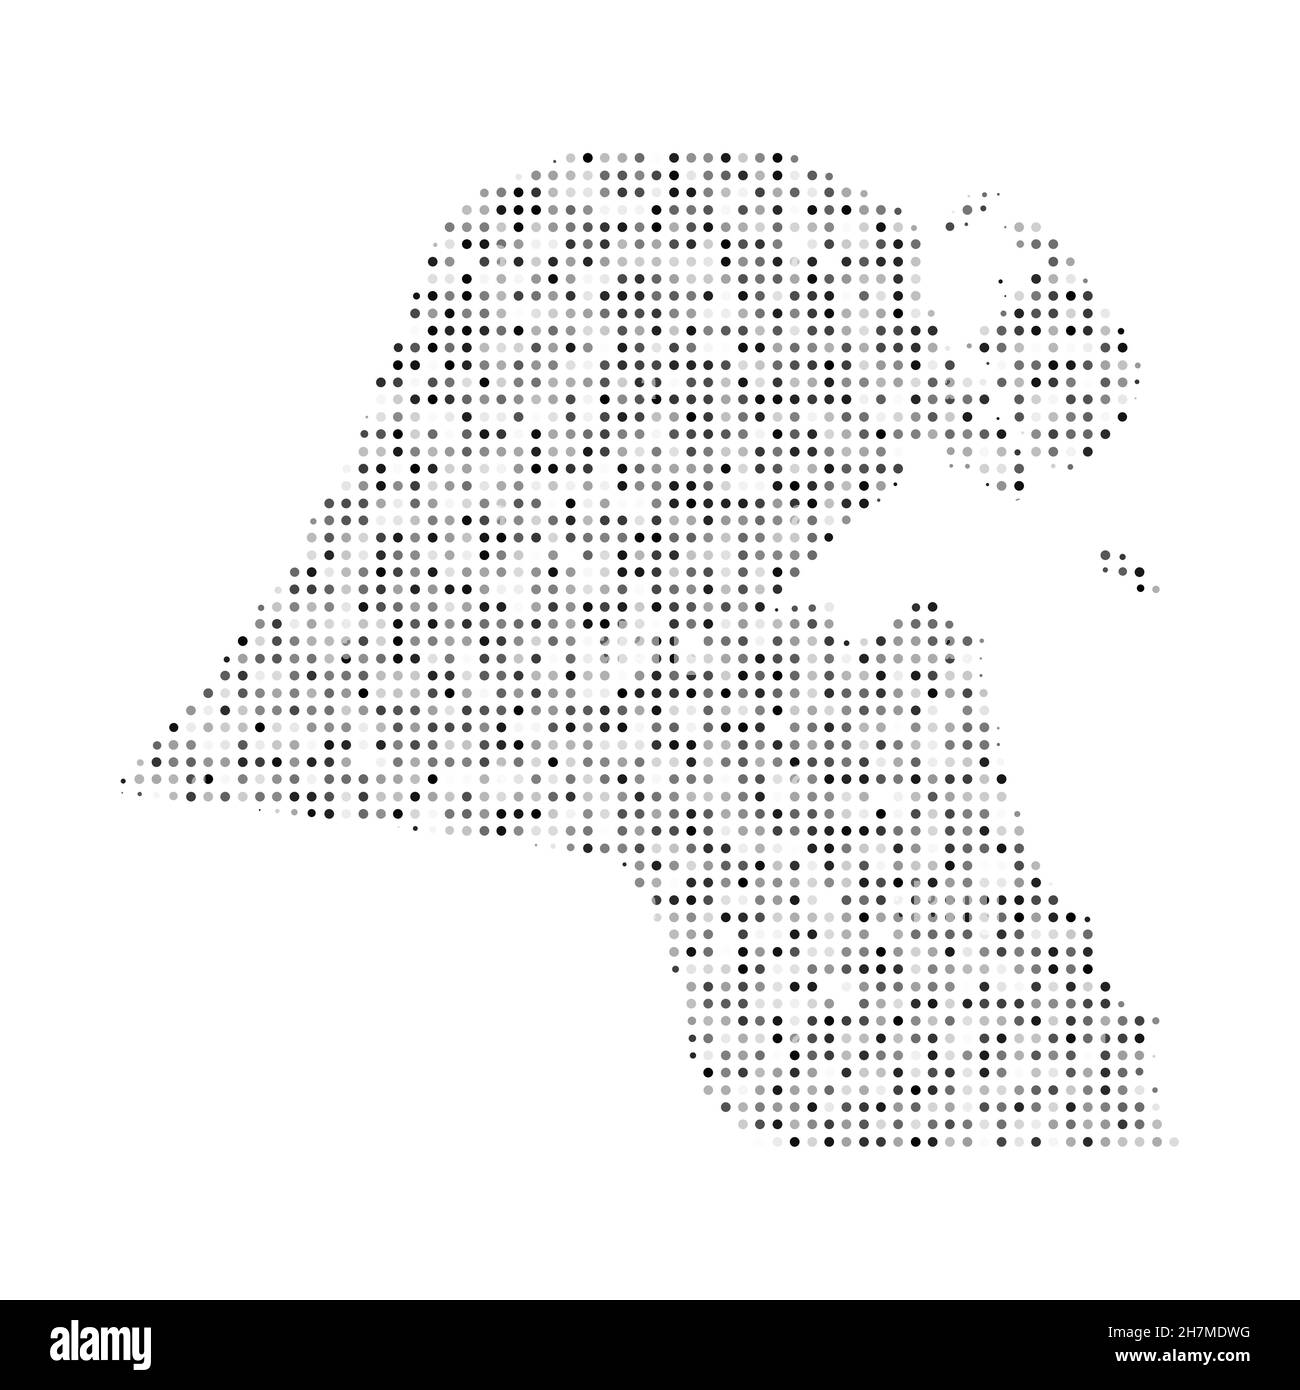 Abstrakte gepunktete schwarz-weiße Halbtoneffekt-Vektorkarte von Kuwait. Landeskarte digitale gepunktete Design-Vektor-Illustration. Stock Vektor